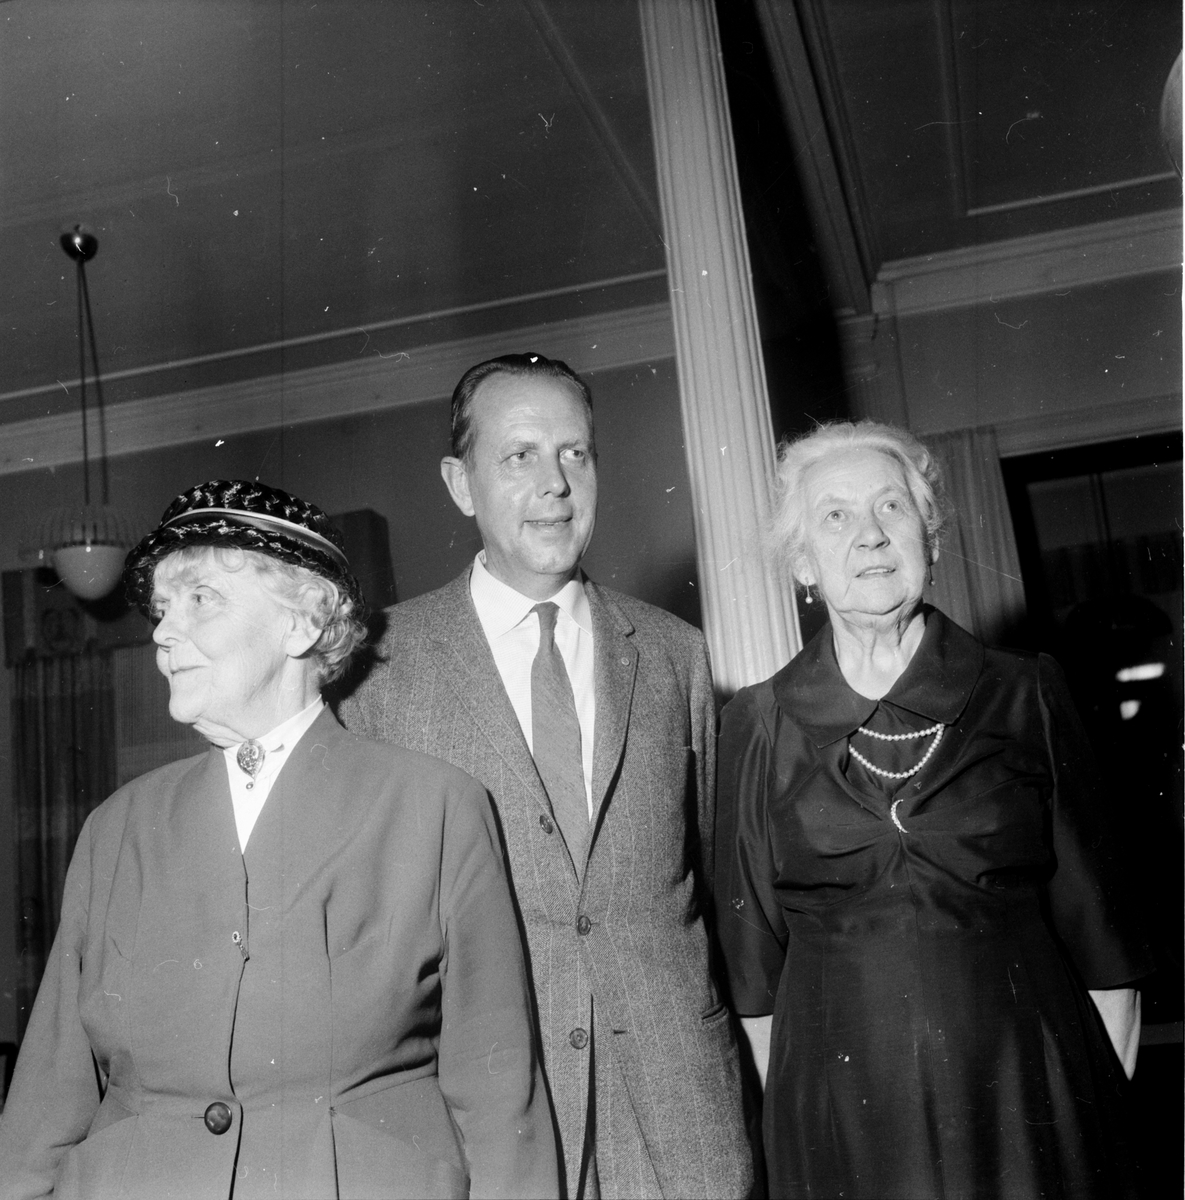 Husmodersförening,
Dr Blomqvist, 29 sept 1961